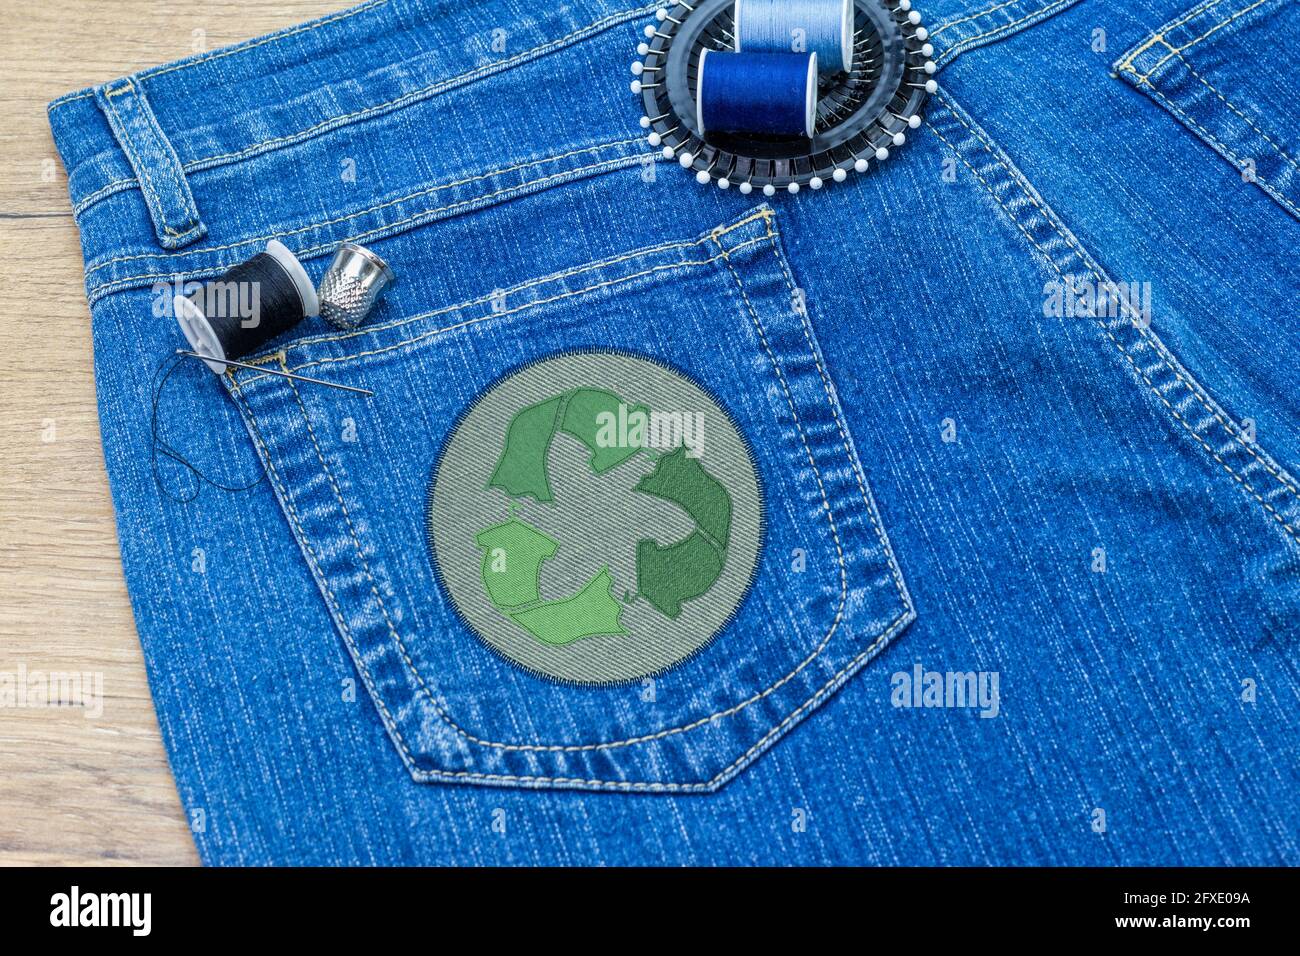 Recyceln Sie Kleidung Icon Patch auf Jeans, nachhaltige Mode sichtbare Ausbesserung Konzept, reparieren, recyceln, wiederverwenden Kleidung und Textilien Abfälle zu reduzieren Stockfoto